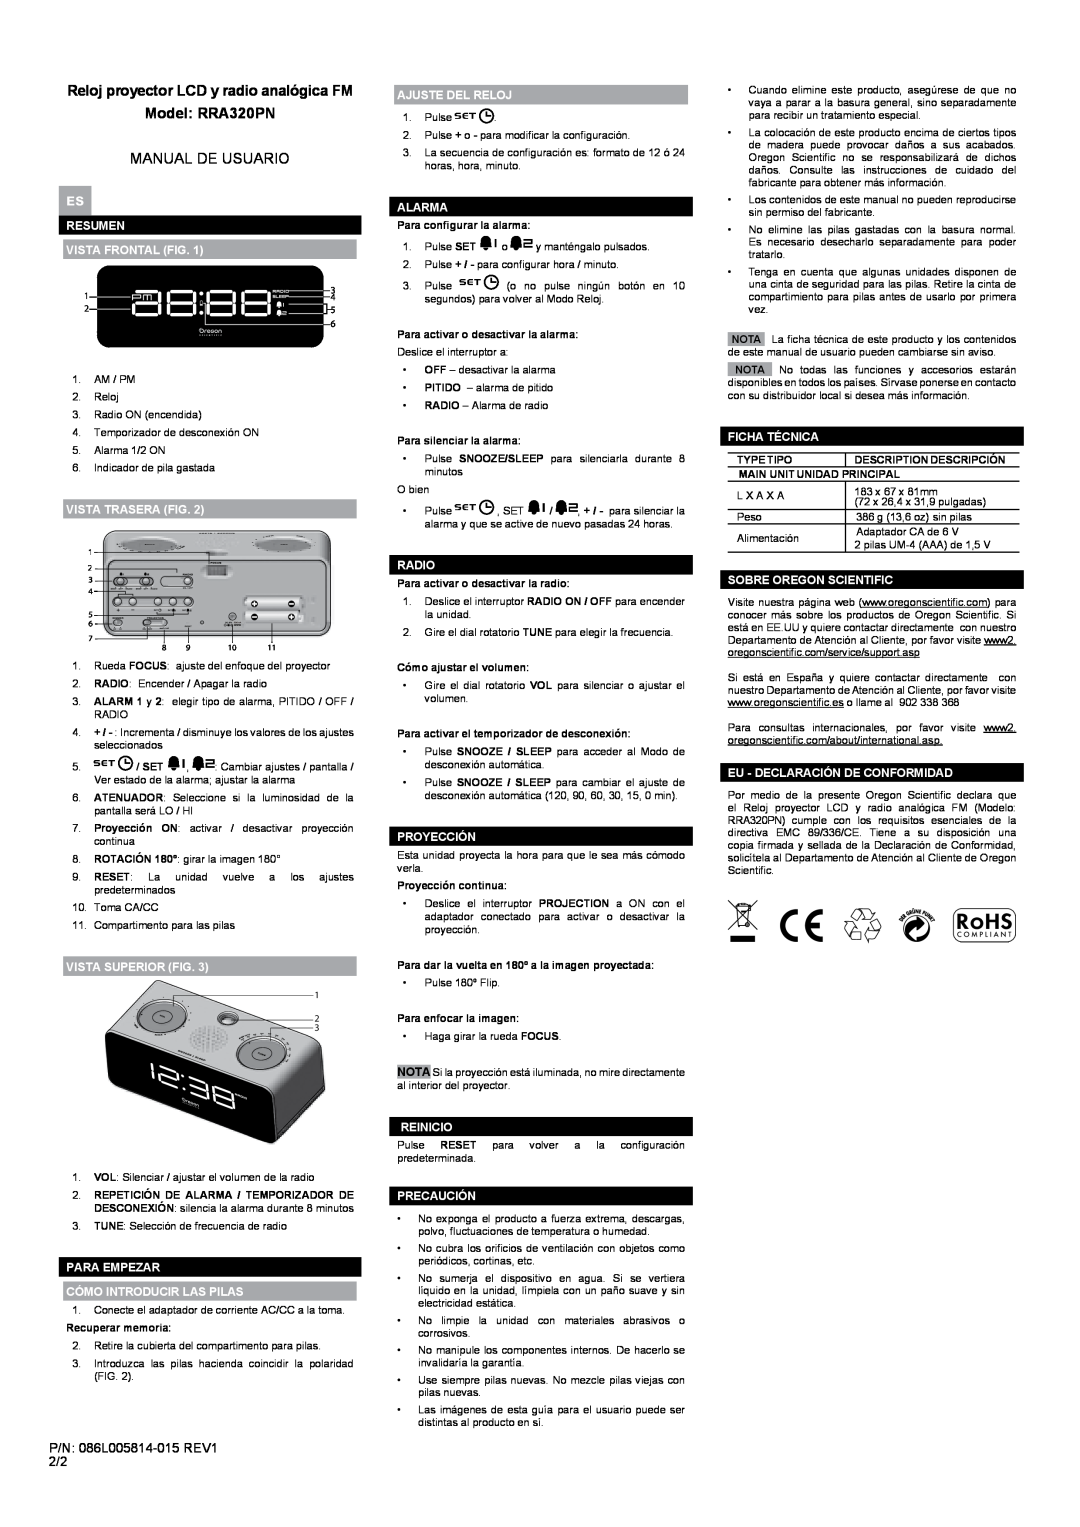 Oregon Scientific user manual Reloj proyector LCD y radio analógica FM Model RRA320PN, Manual De Usuario 